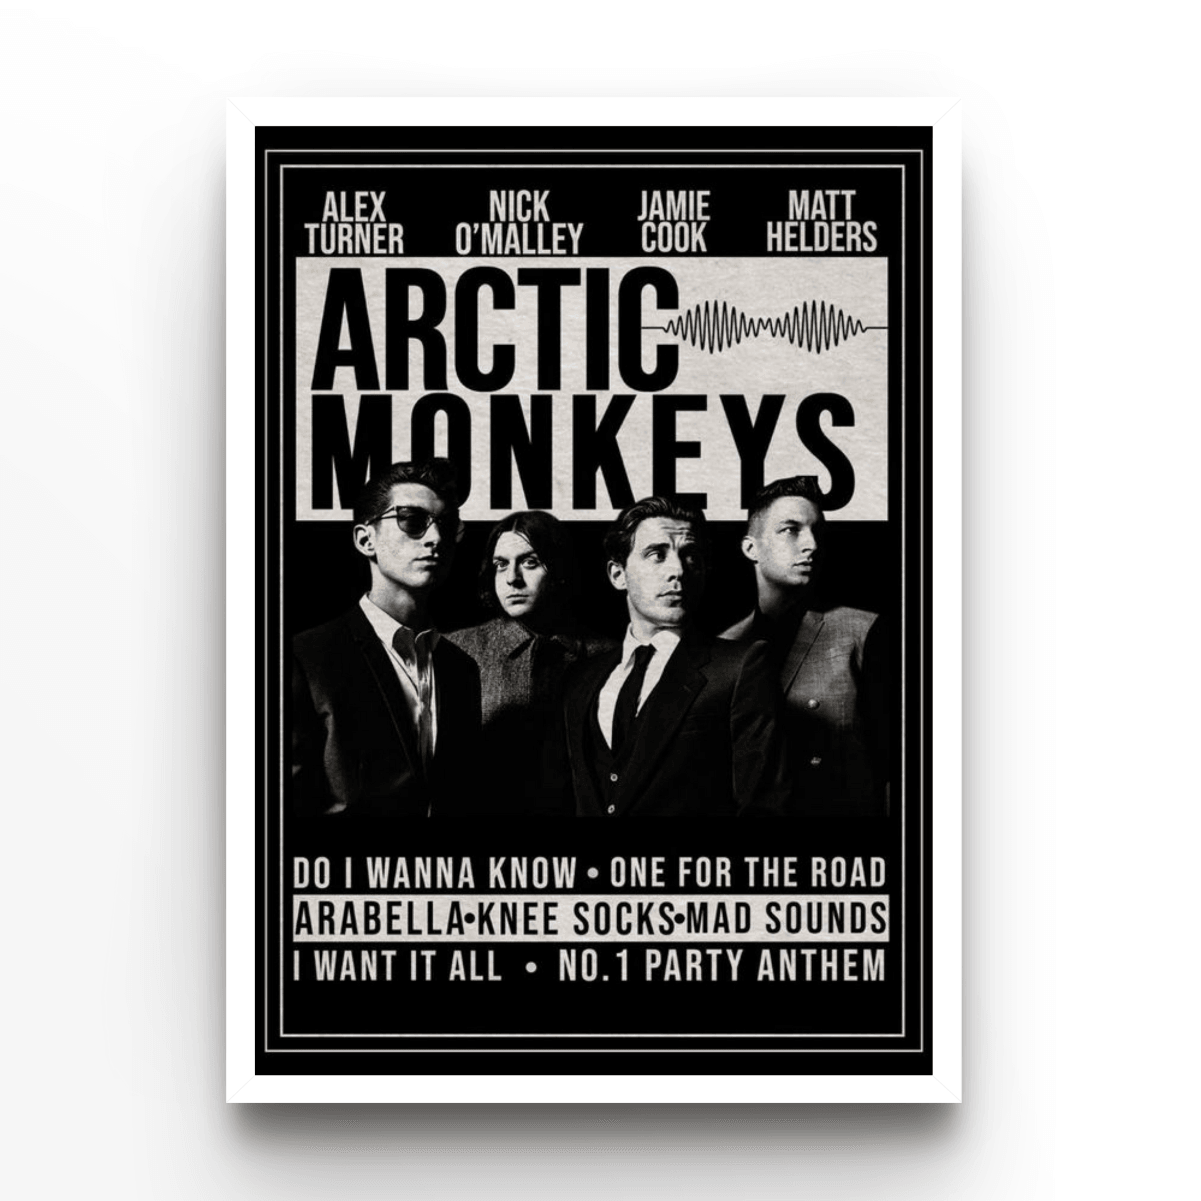 Arctic Monkeys - A4, A3, A2 Posters Base - Poster Print Shop / Art Prints / PostersBase